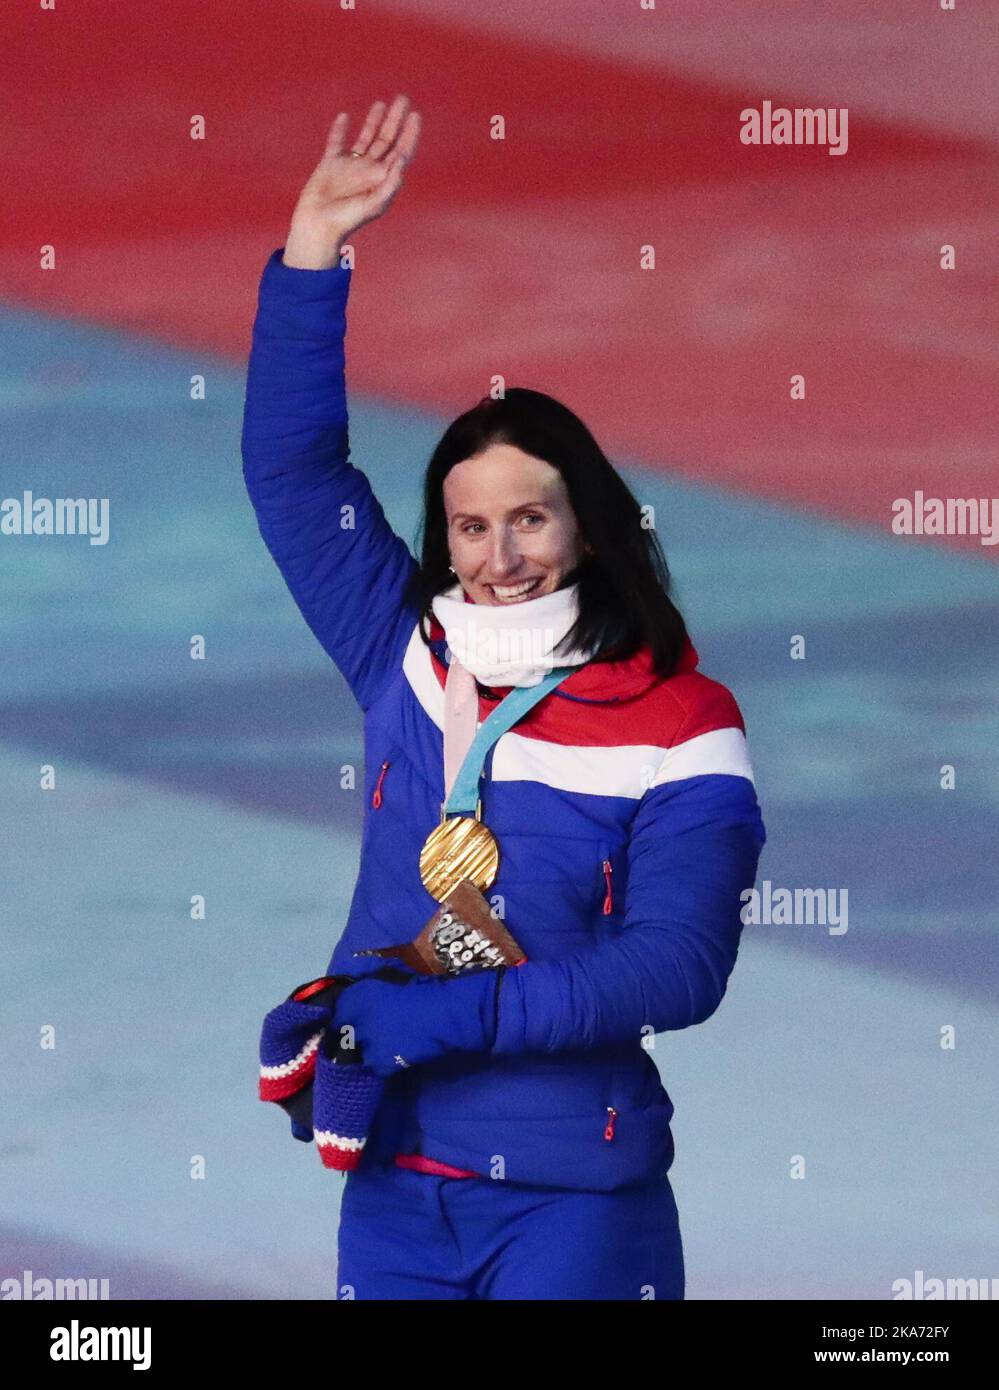 La Norvège Marit Bjoergen, Gold, fait la vague lors de la cérémonie des médailles pour le ski de fond féminin de 30k lors de la cérémonie de clôture des Jeux olympiques d'hiver de 2018 à Pyeongchang, Corée du Sud, le dimanche 25 février 2018. Photo: Lise Aaserud / NTB scanpi Banque D'Images